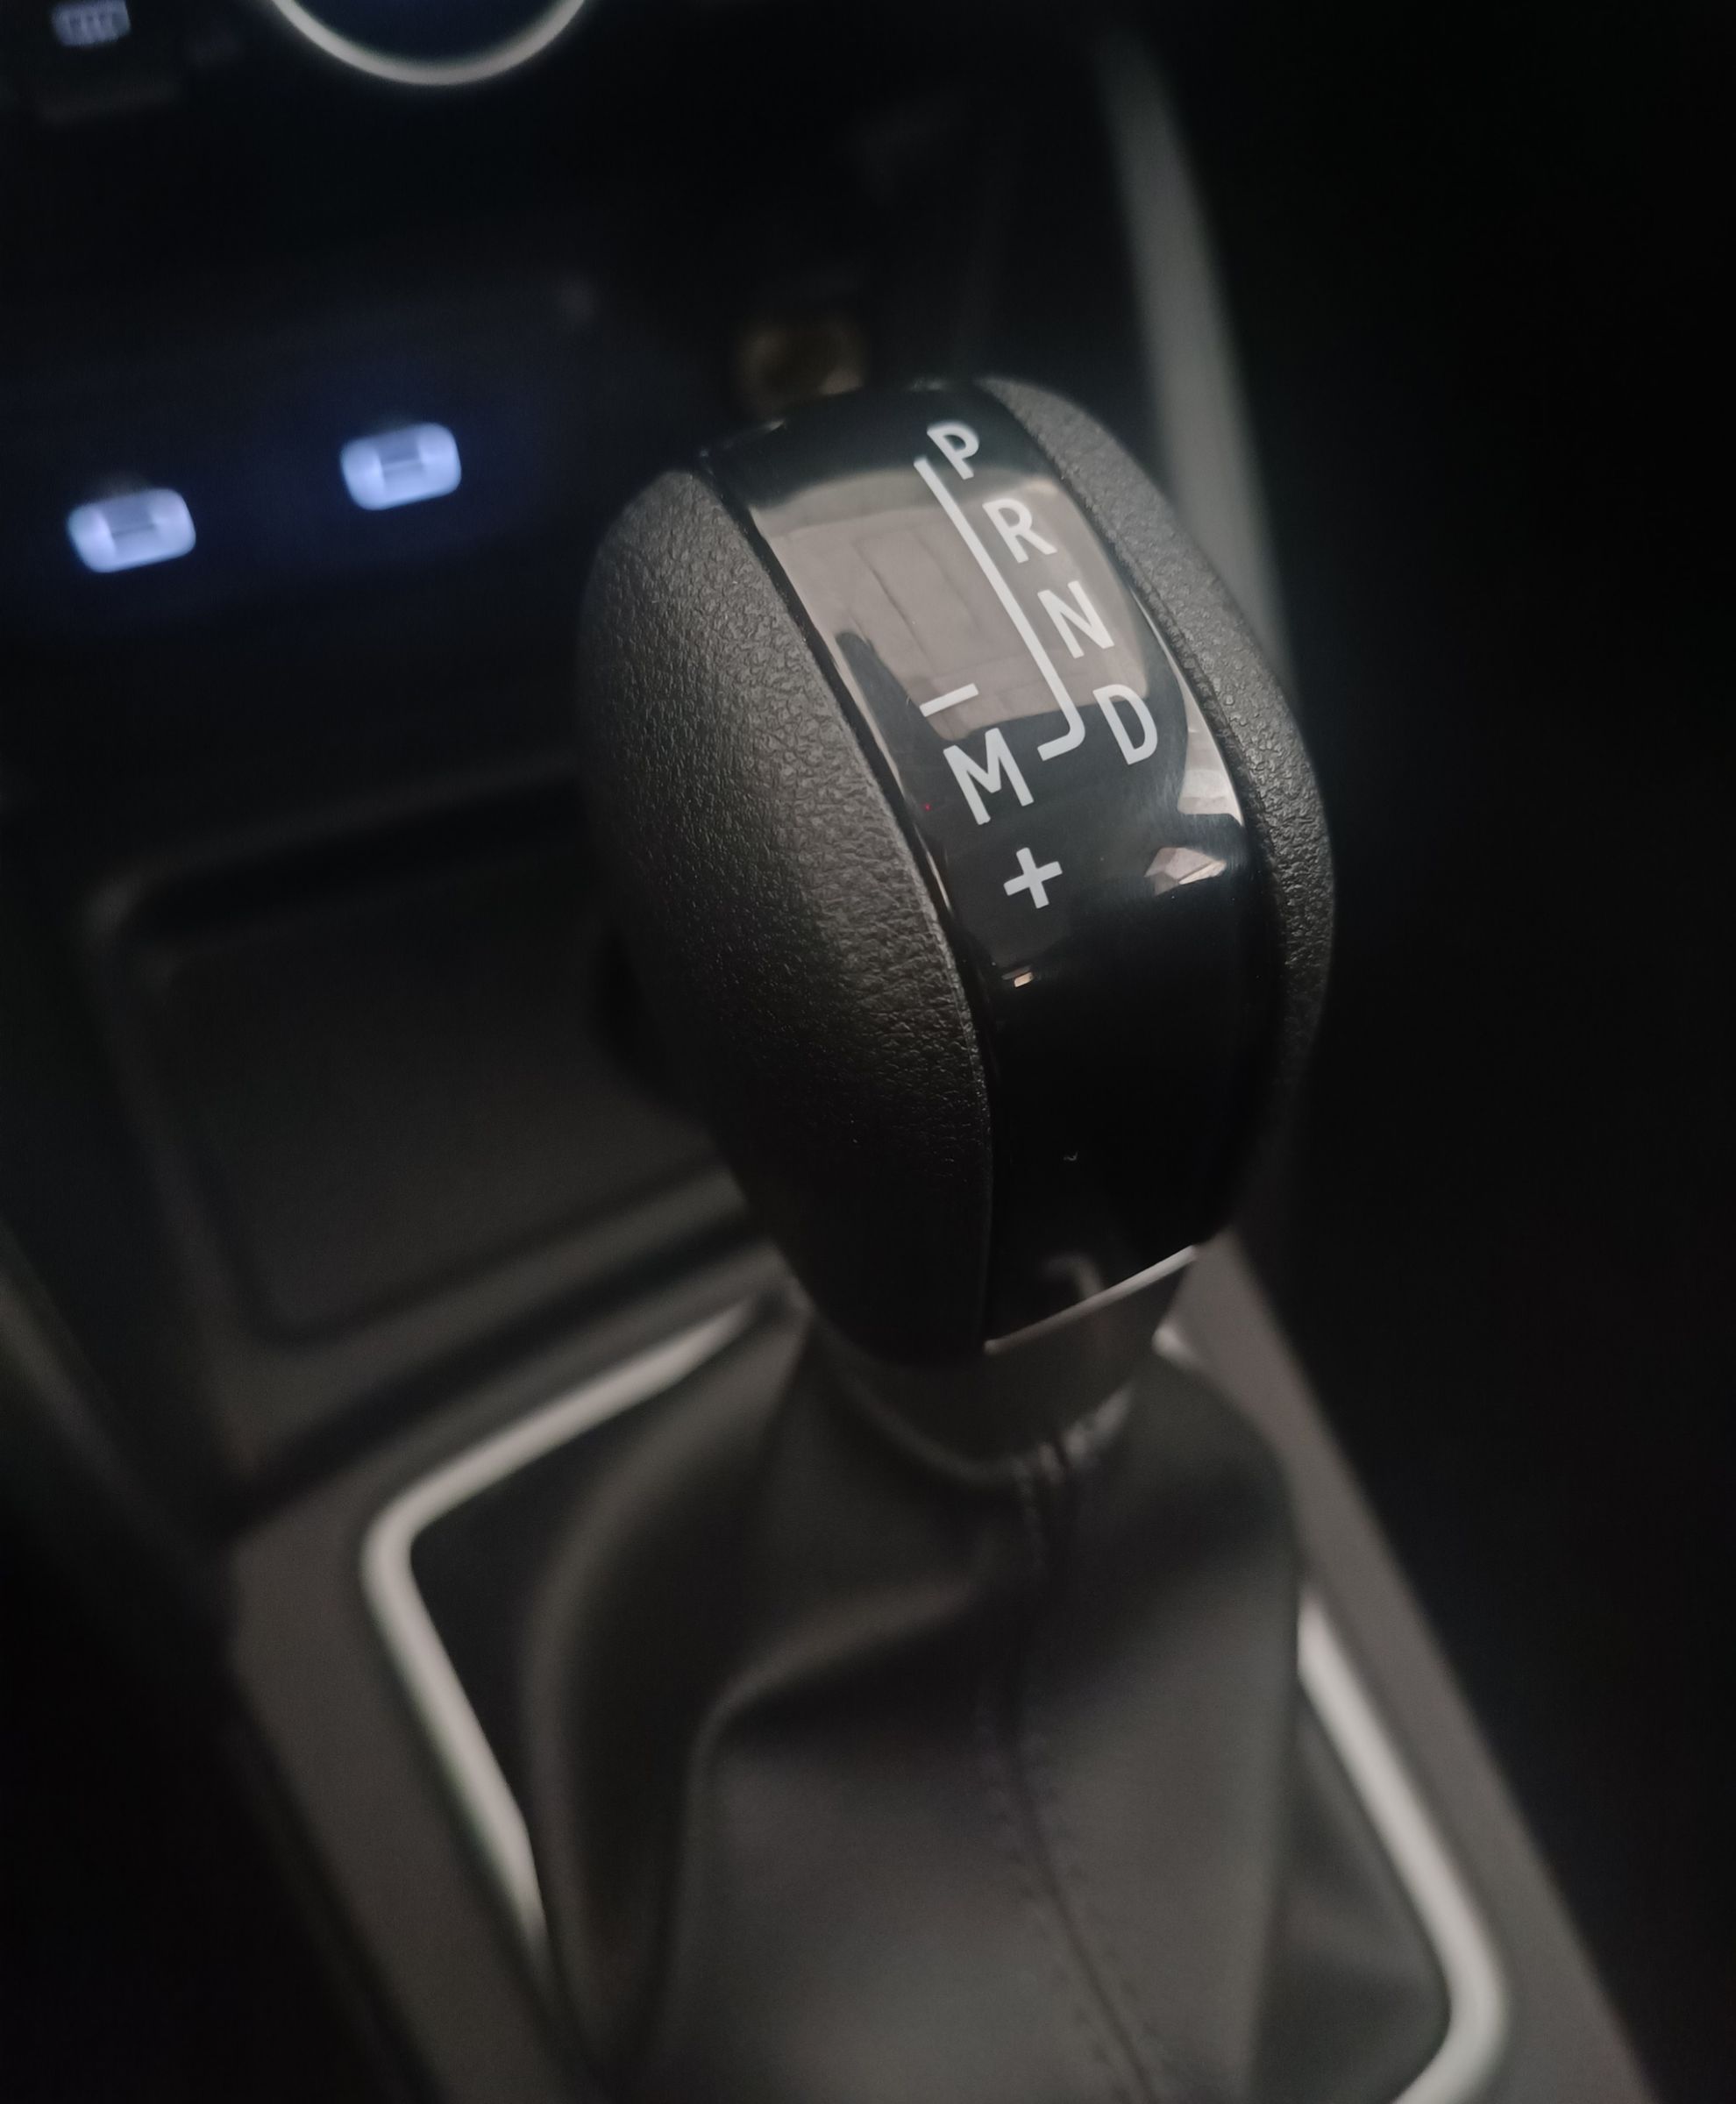 El cambio automtico EDC puede manejarse manualmente desde la palanca, pero no desde el volante.